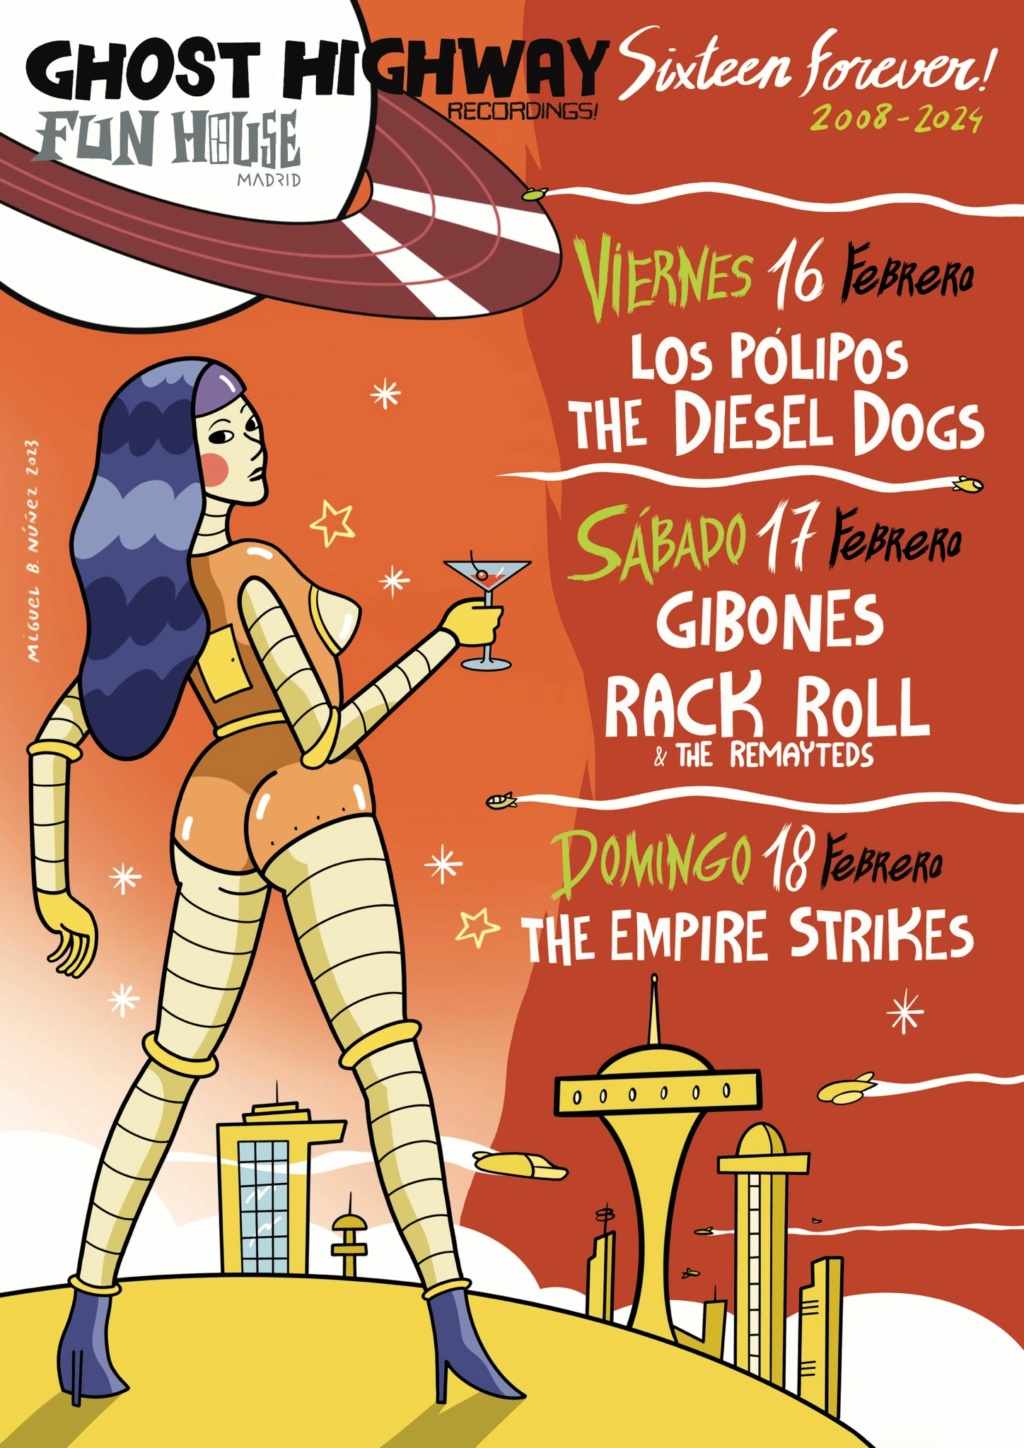 The Diesel Dogs - Nuevo Disco - Nueva reseña en Rockzone - Página 3 Whatsa14